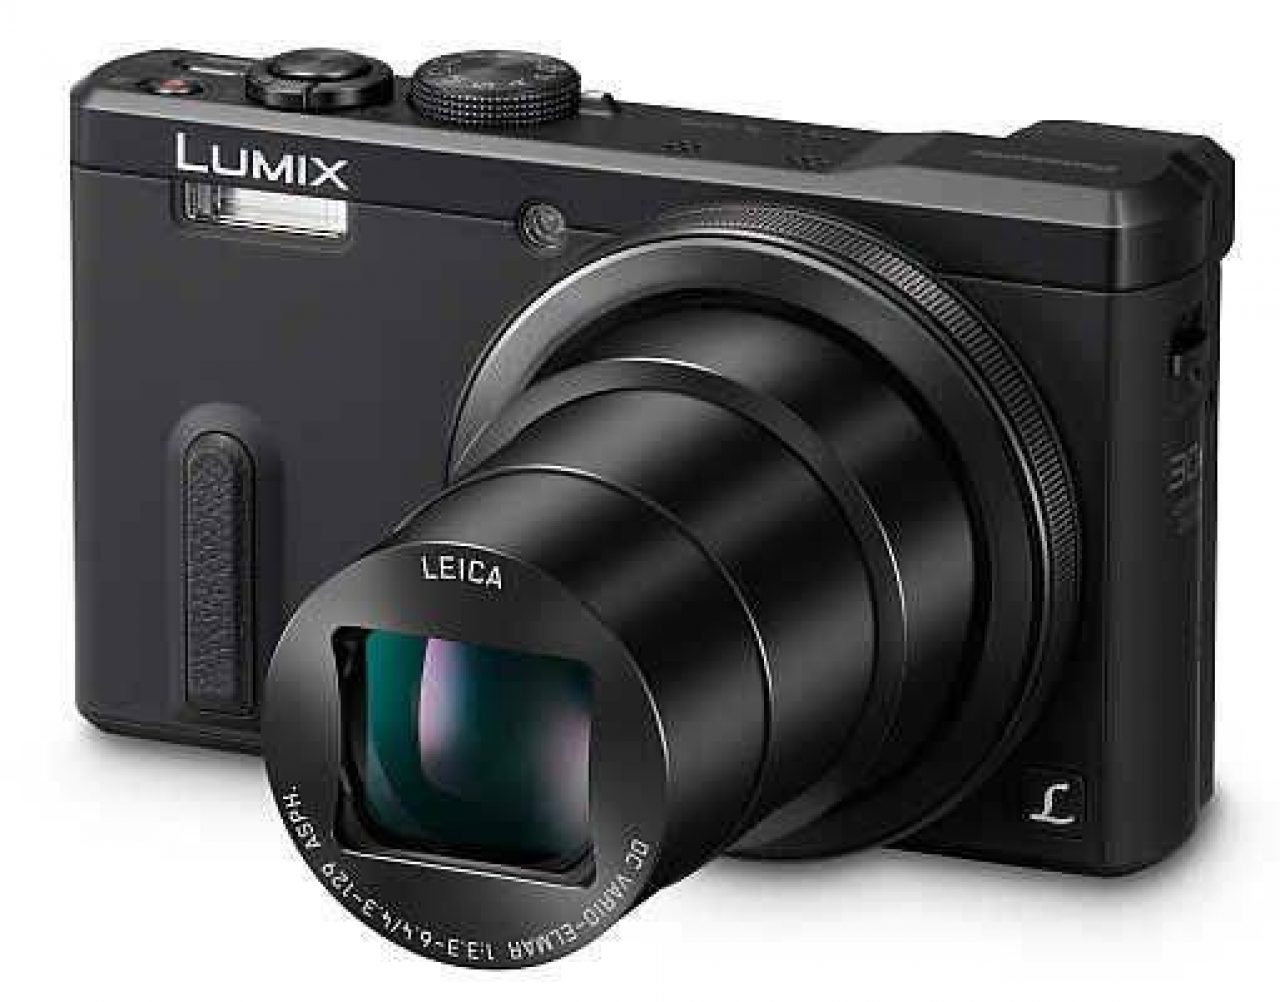 カメラ デジタルカメラ Panasonic Lumix DMC-TZ60 Review | Photography Blog